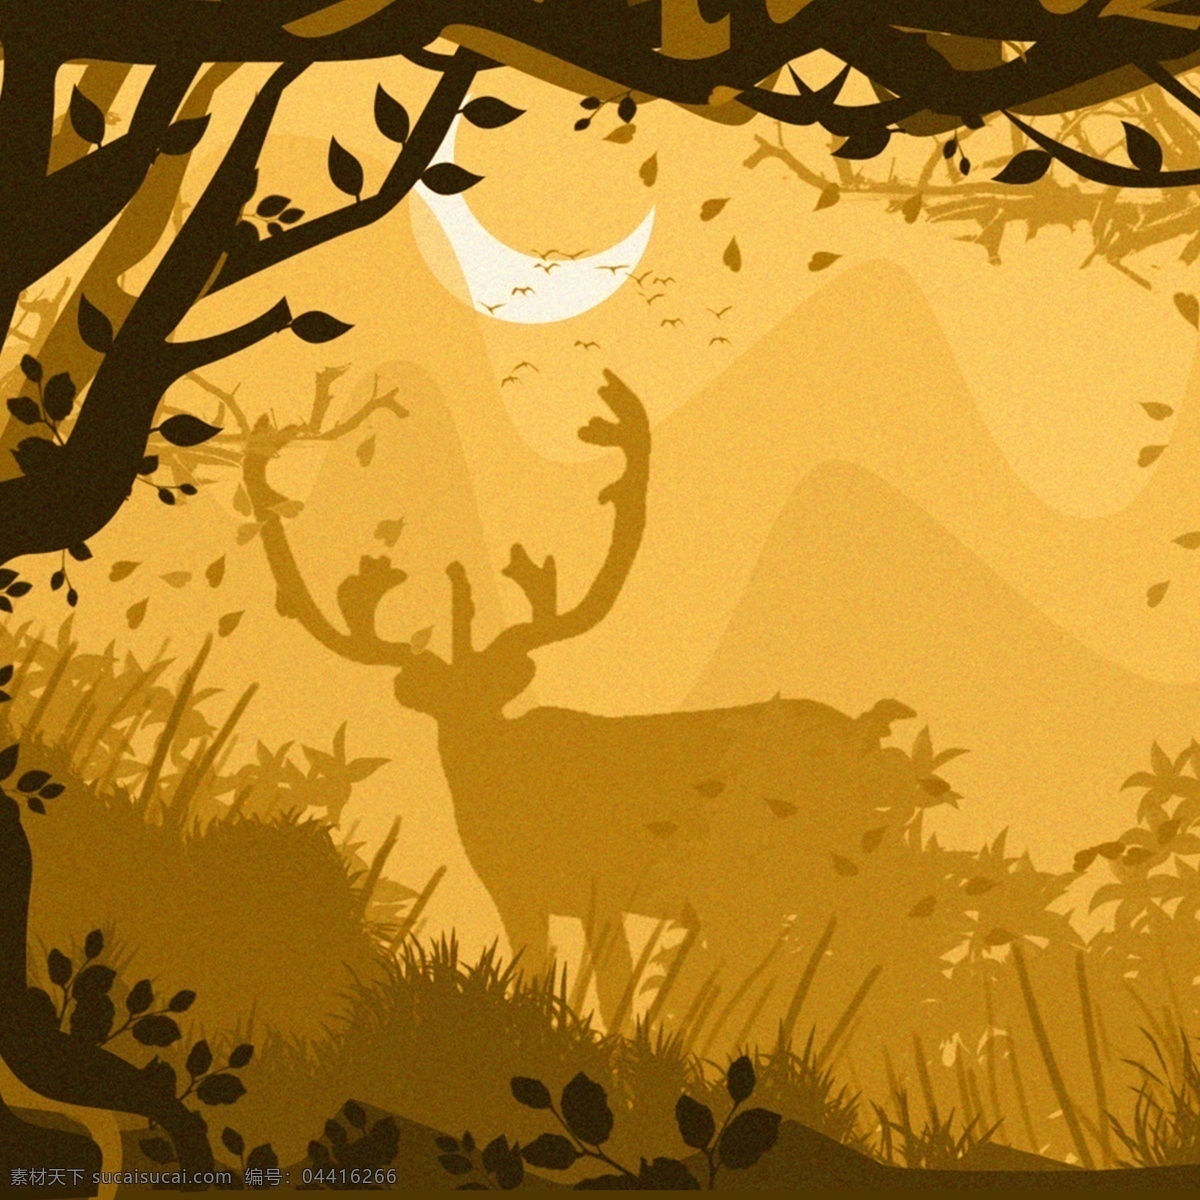 秋季森林与鹿 剪纸 插画 森林 黄昏 简约 鹿